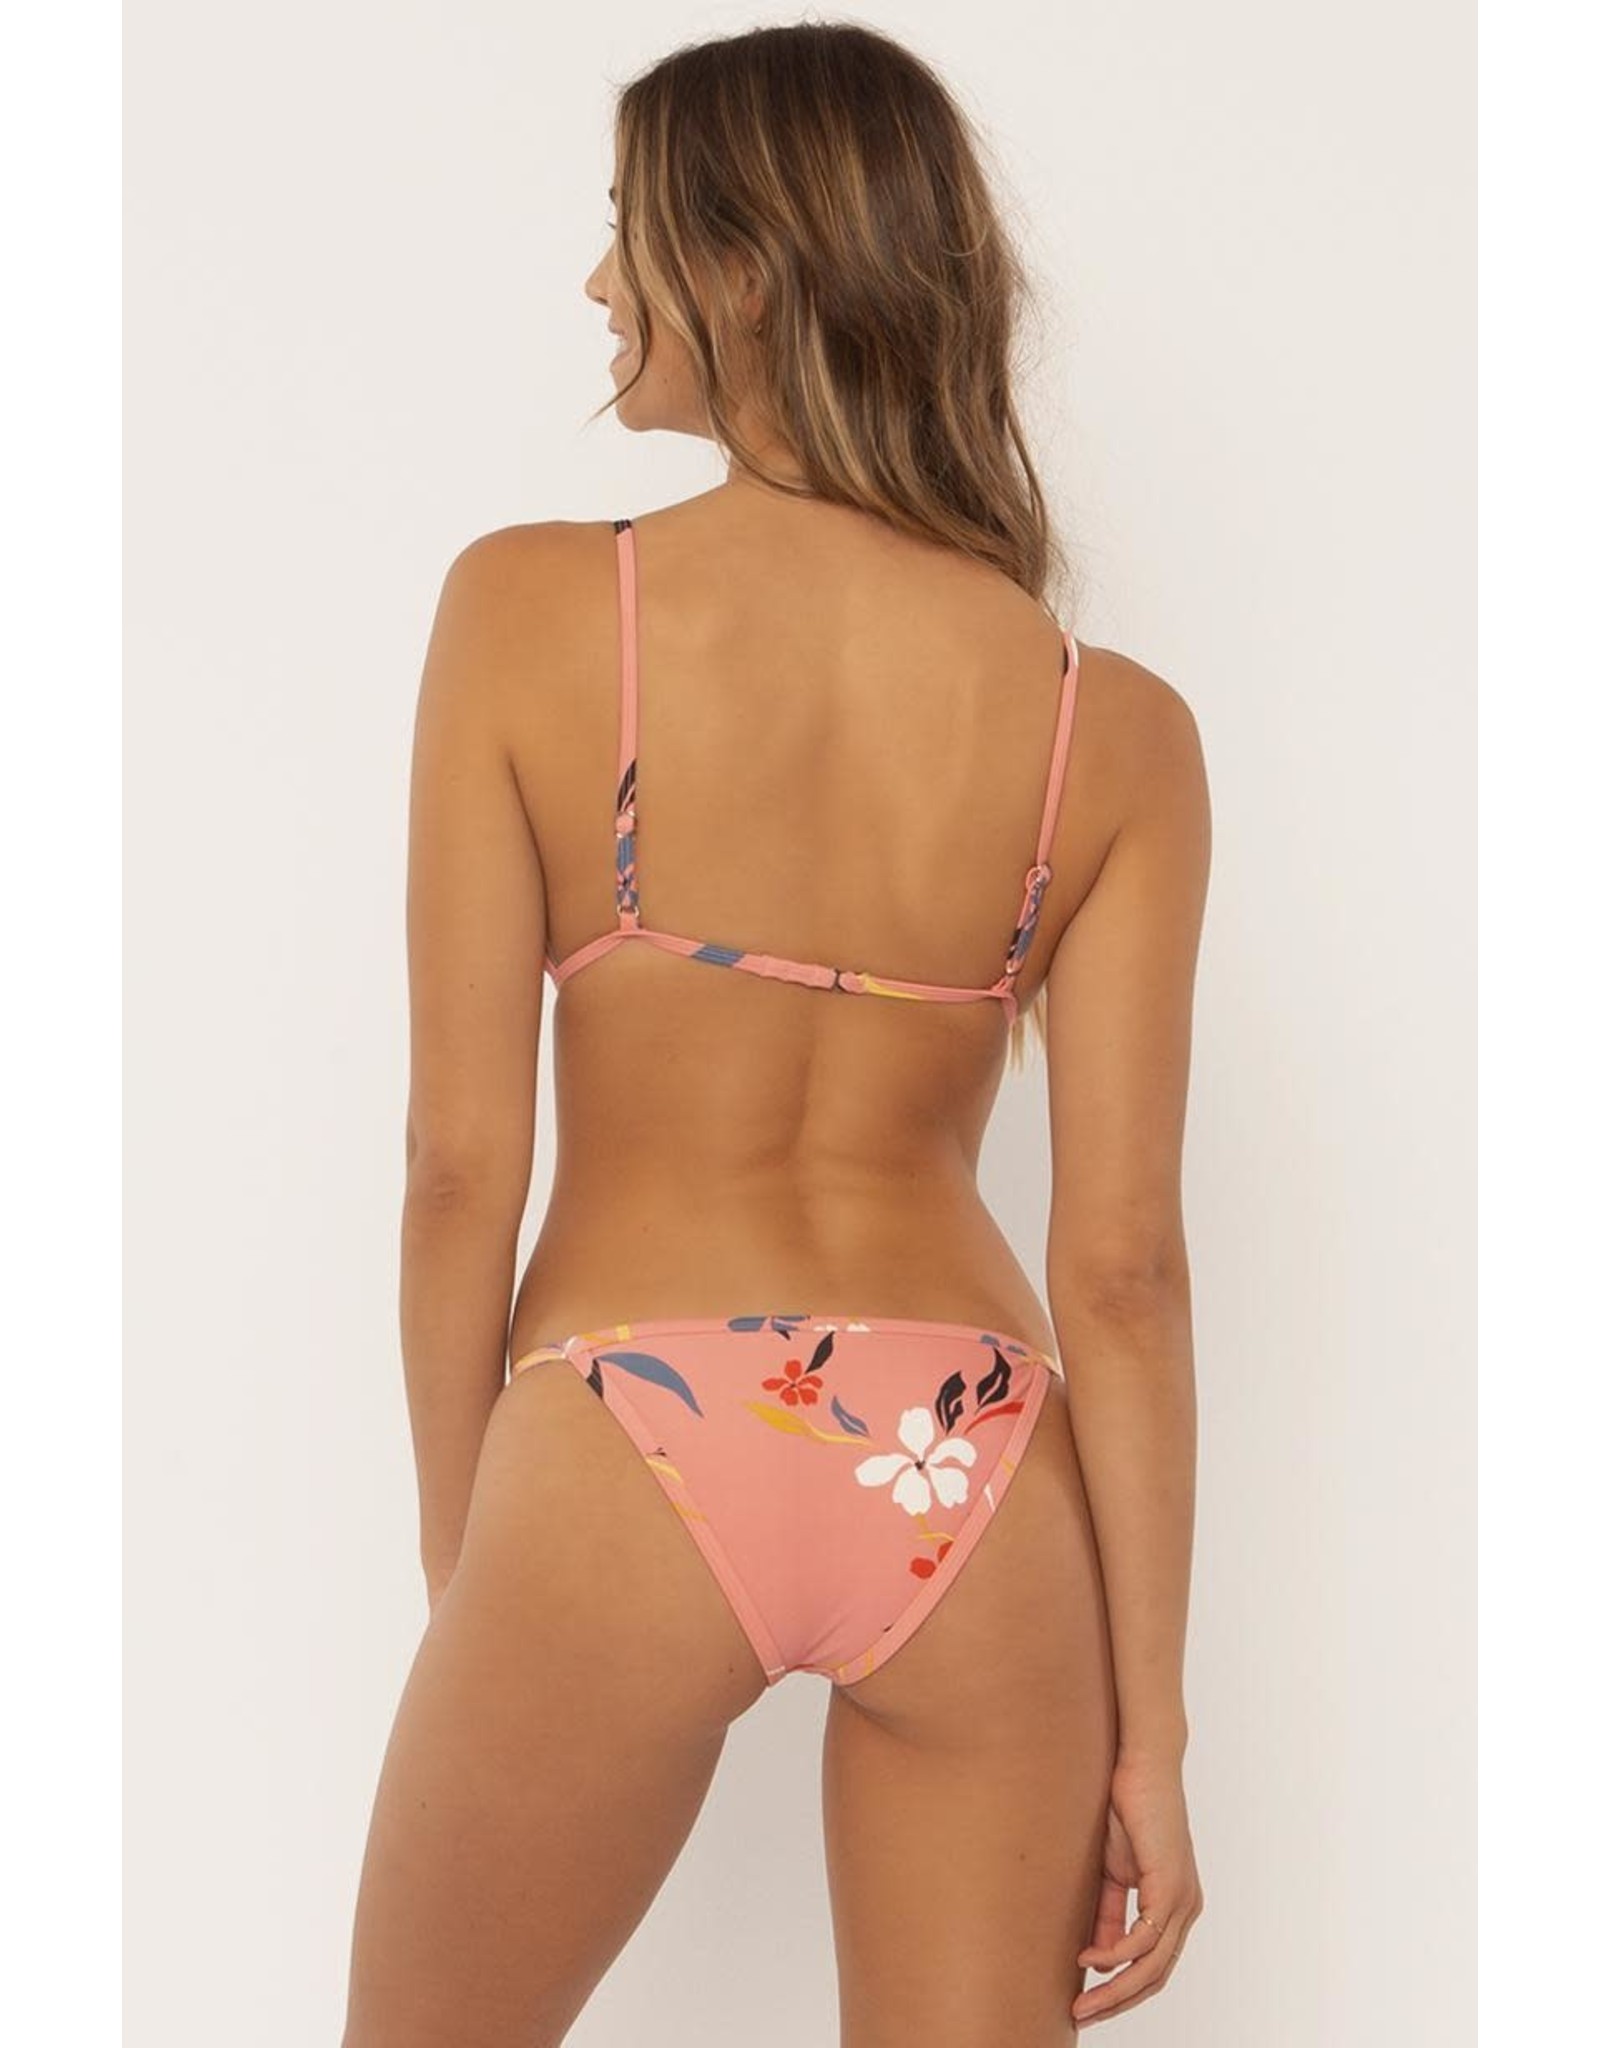 SISSTR Sisstr Hot Tropic Bikini Top